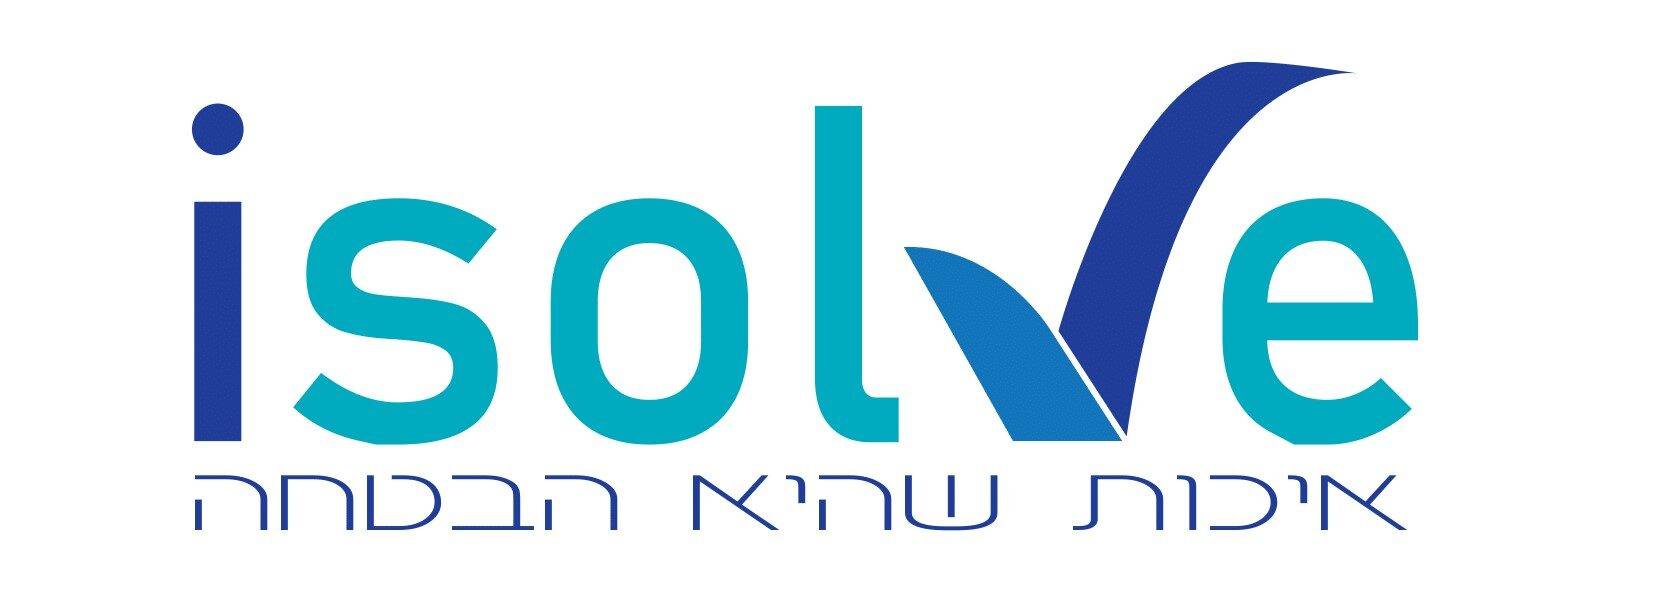 cropped-mili-new-logo-1